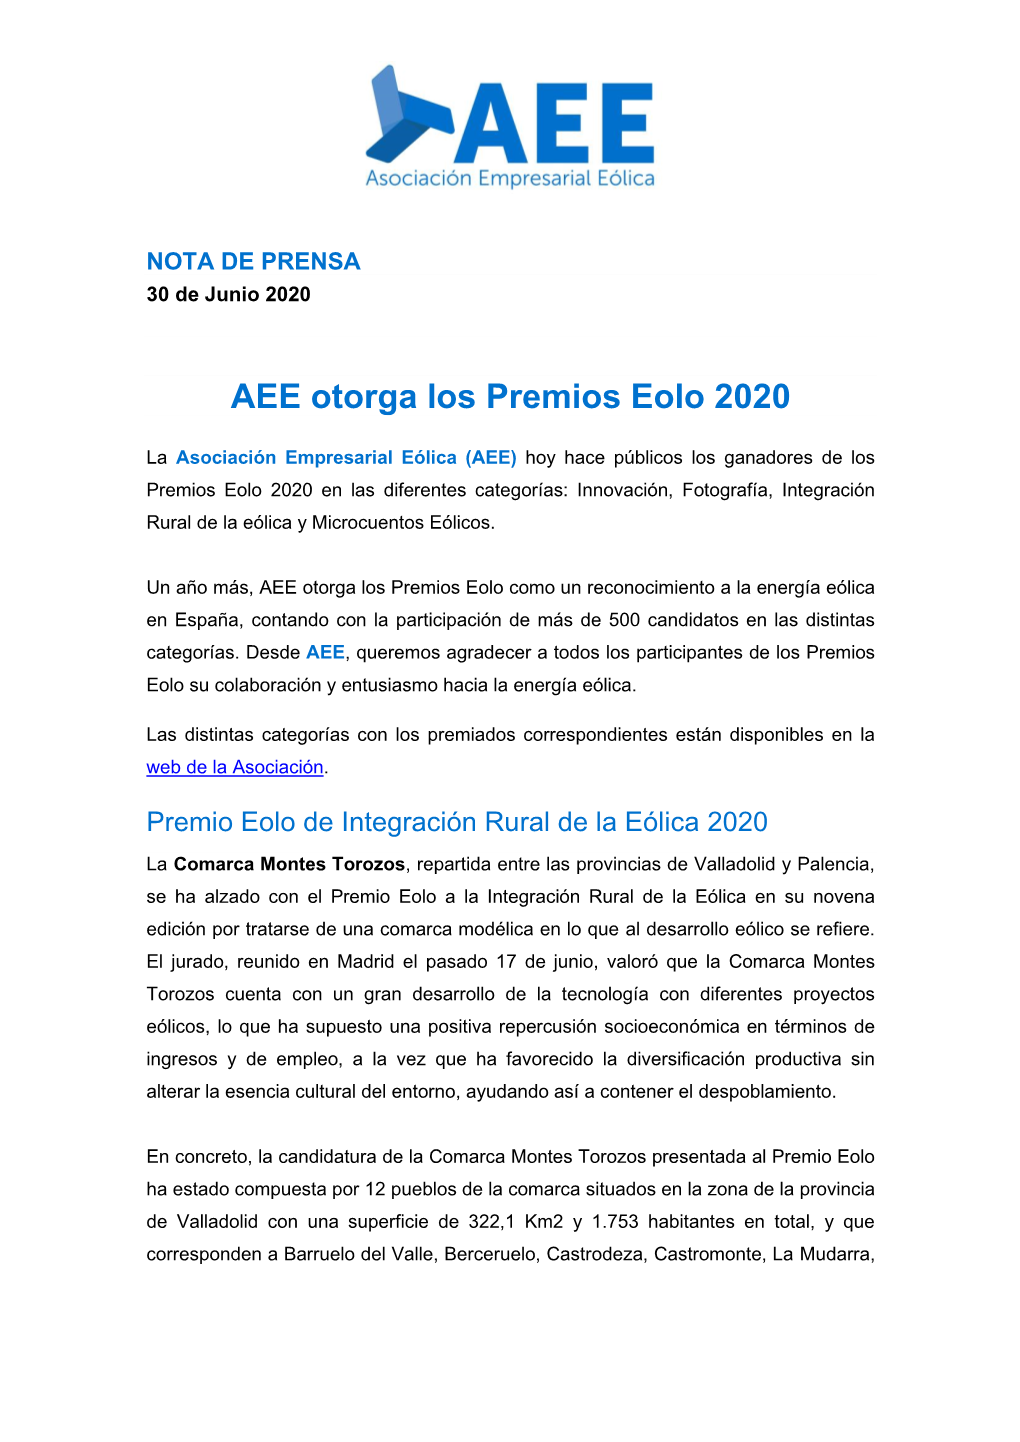 AEE Otorga Los Premios Eolo 2020